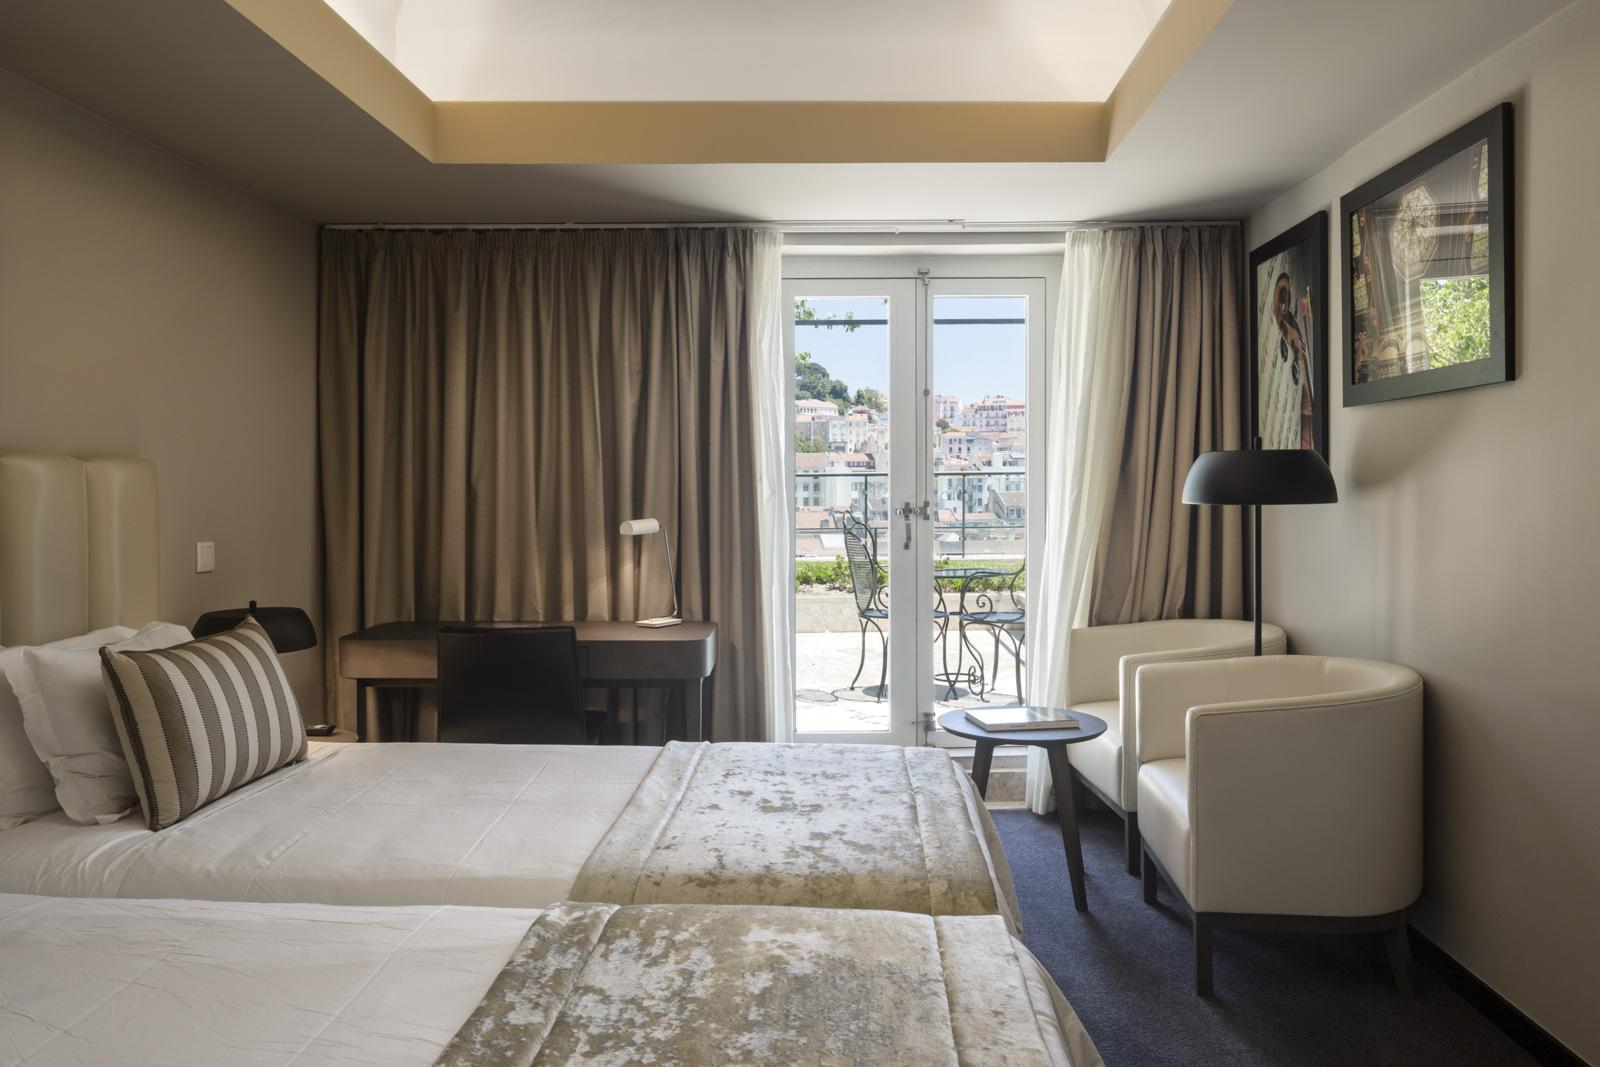 Bedroom 4, Hotel do Chiado, Lisboa